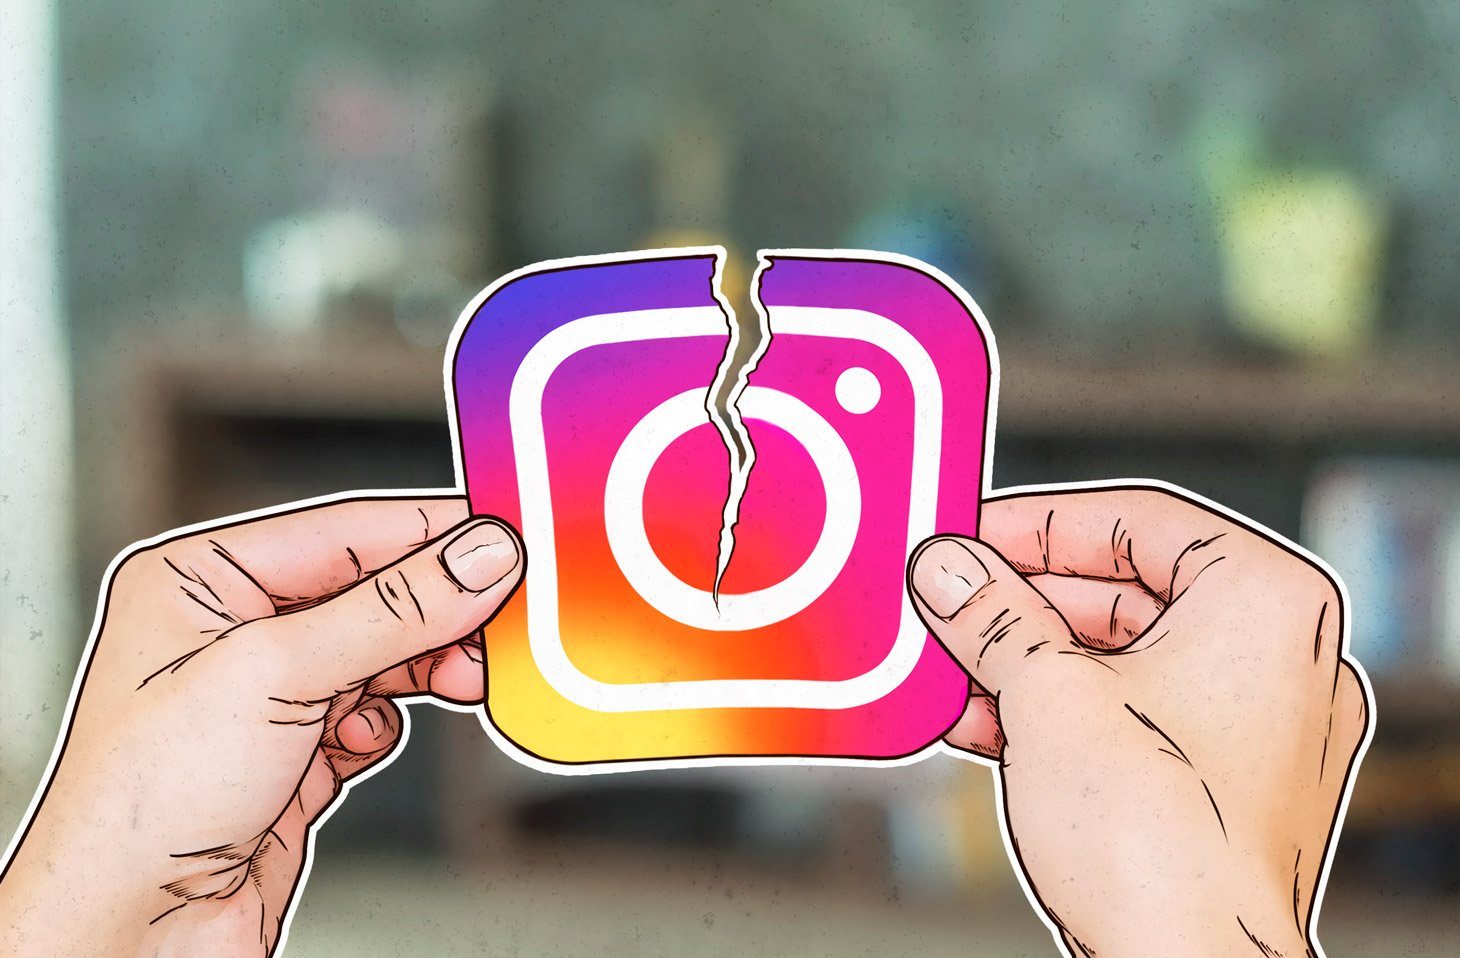 InstagramAero: Özellikleri, Kullanımı ve indirme